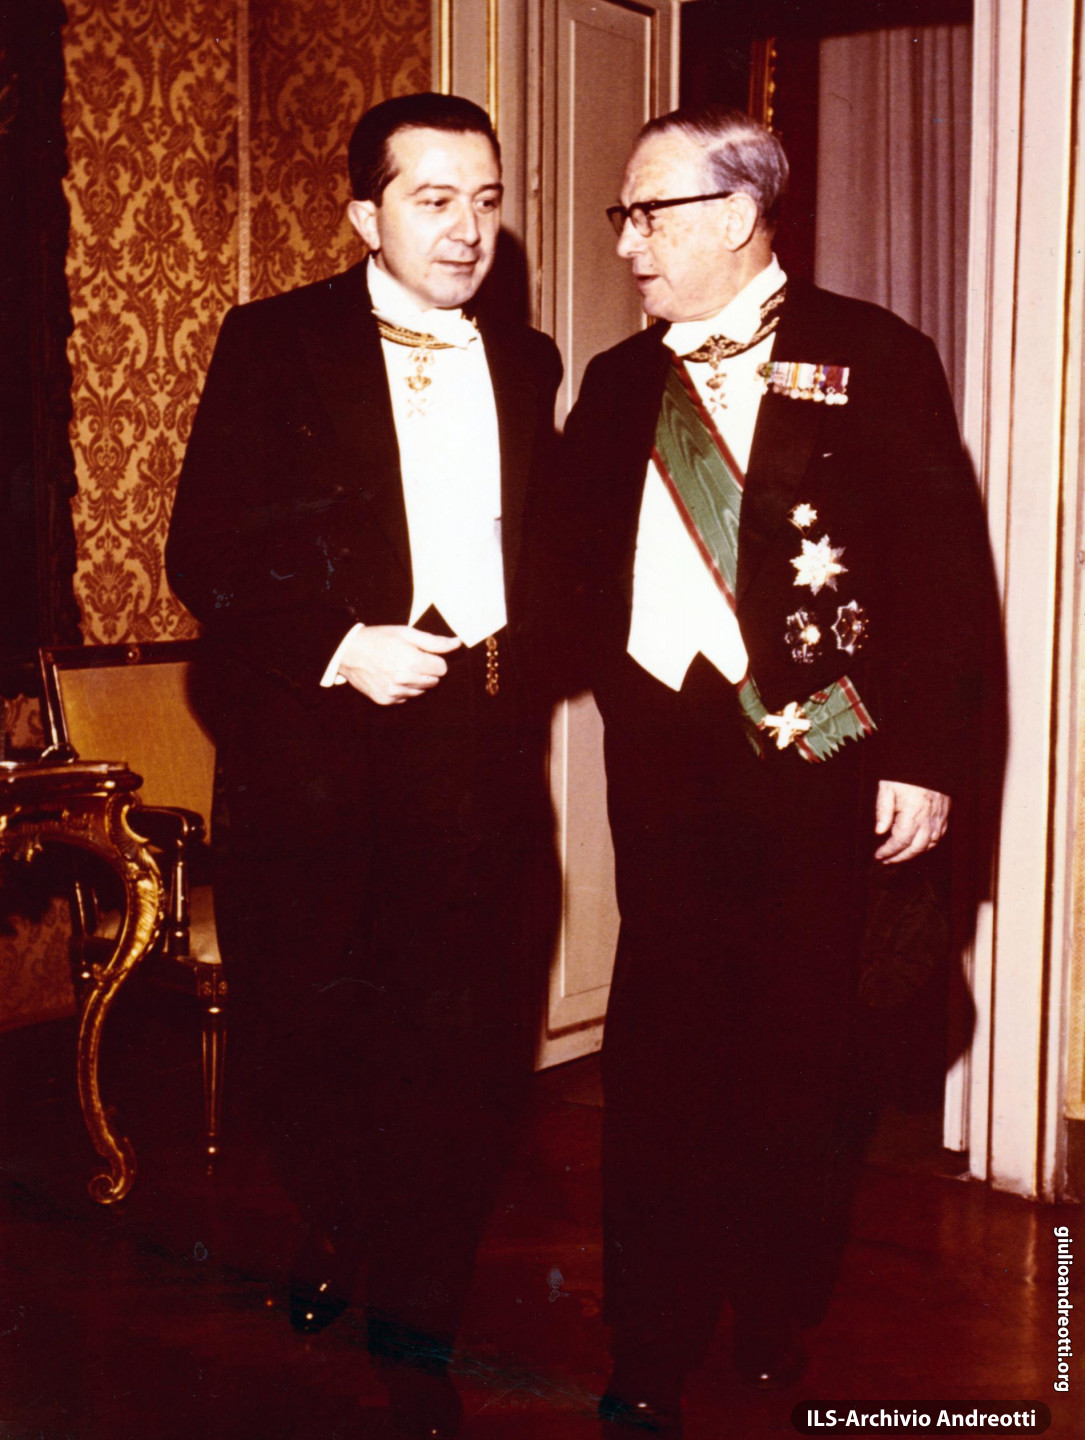 Il re di Svezia Gustavo VI in visita ufficiale a Roma nel 1967